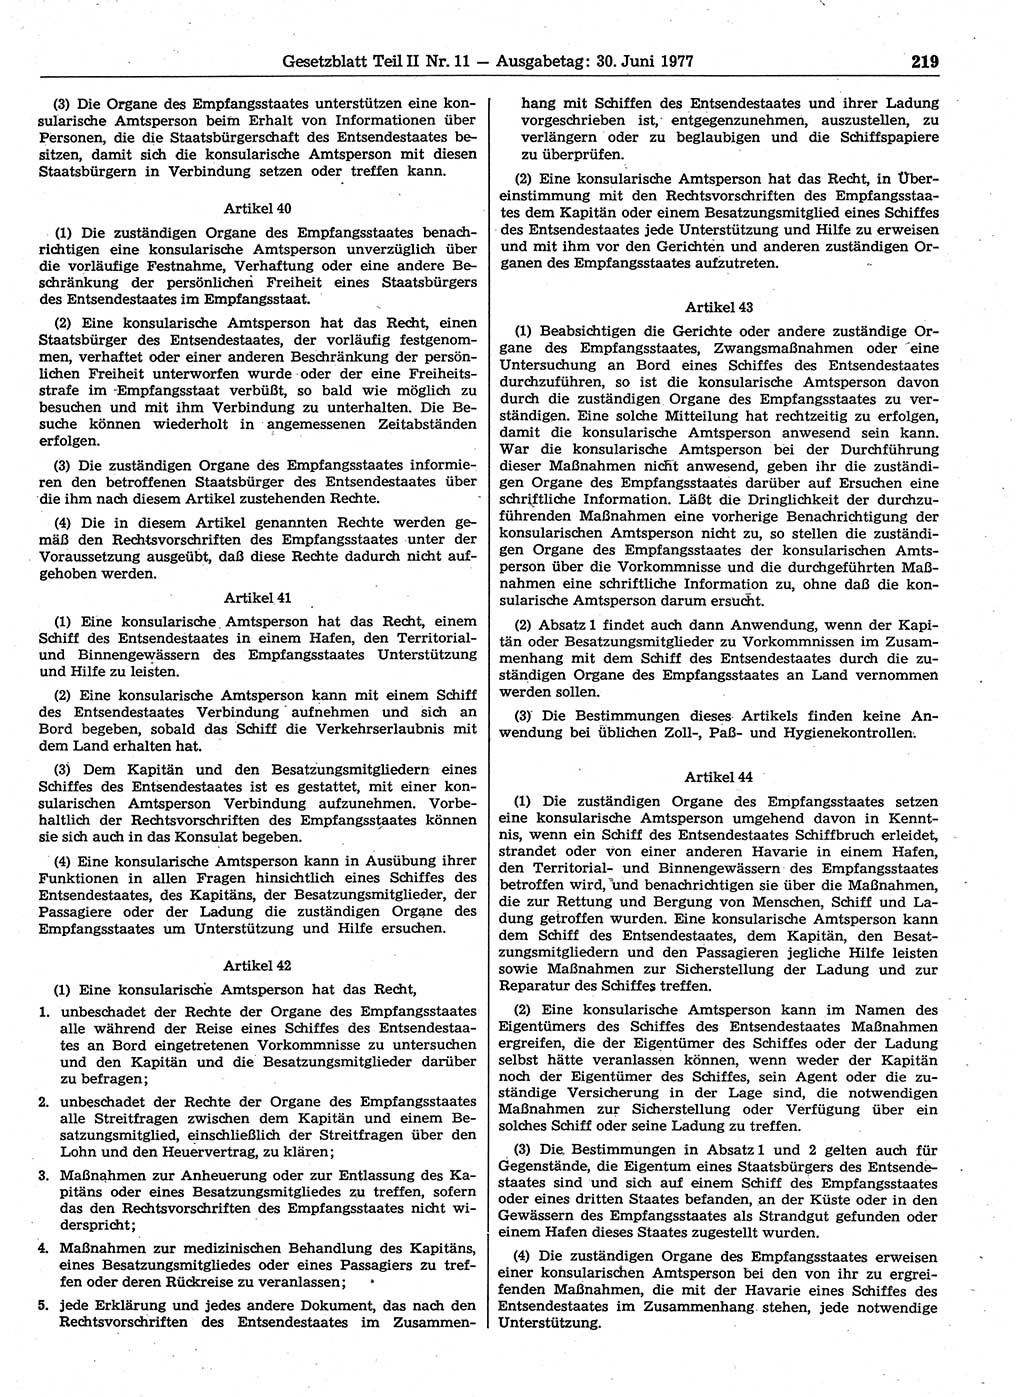 Gesetzblatt (GBl.) der Deutschen Demokratischen Republik (DDR) Teil ⅠⅠ 1977, Seite 219 (GBl. DDR ⅠⅠ 1977, S. 219)